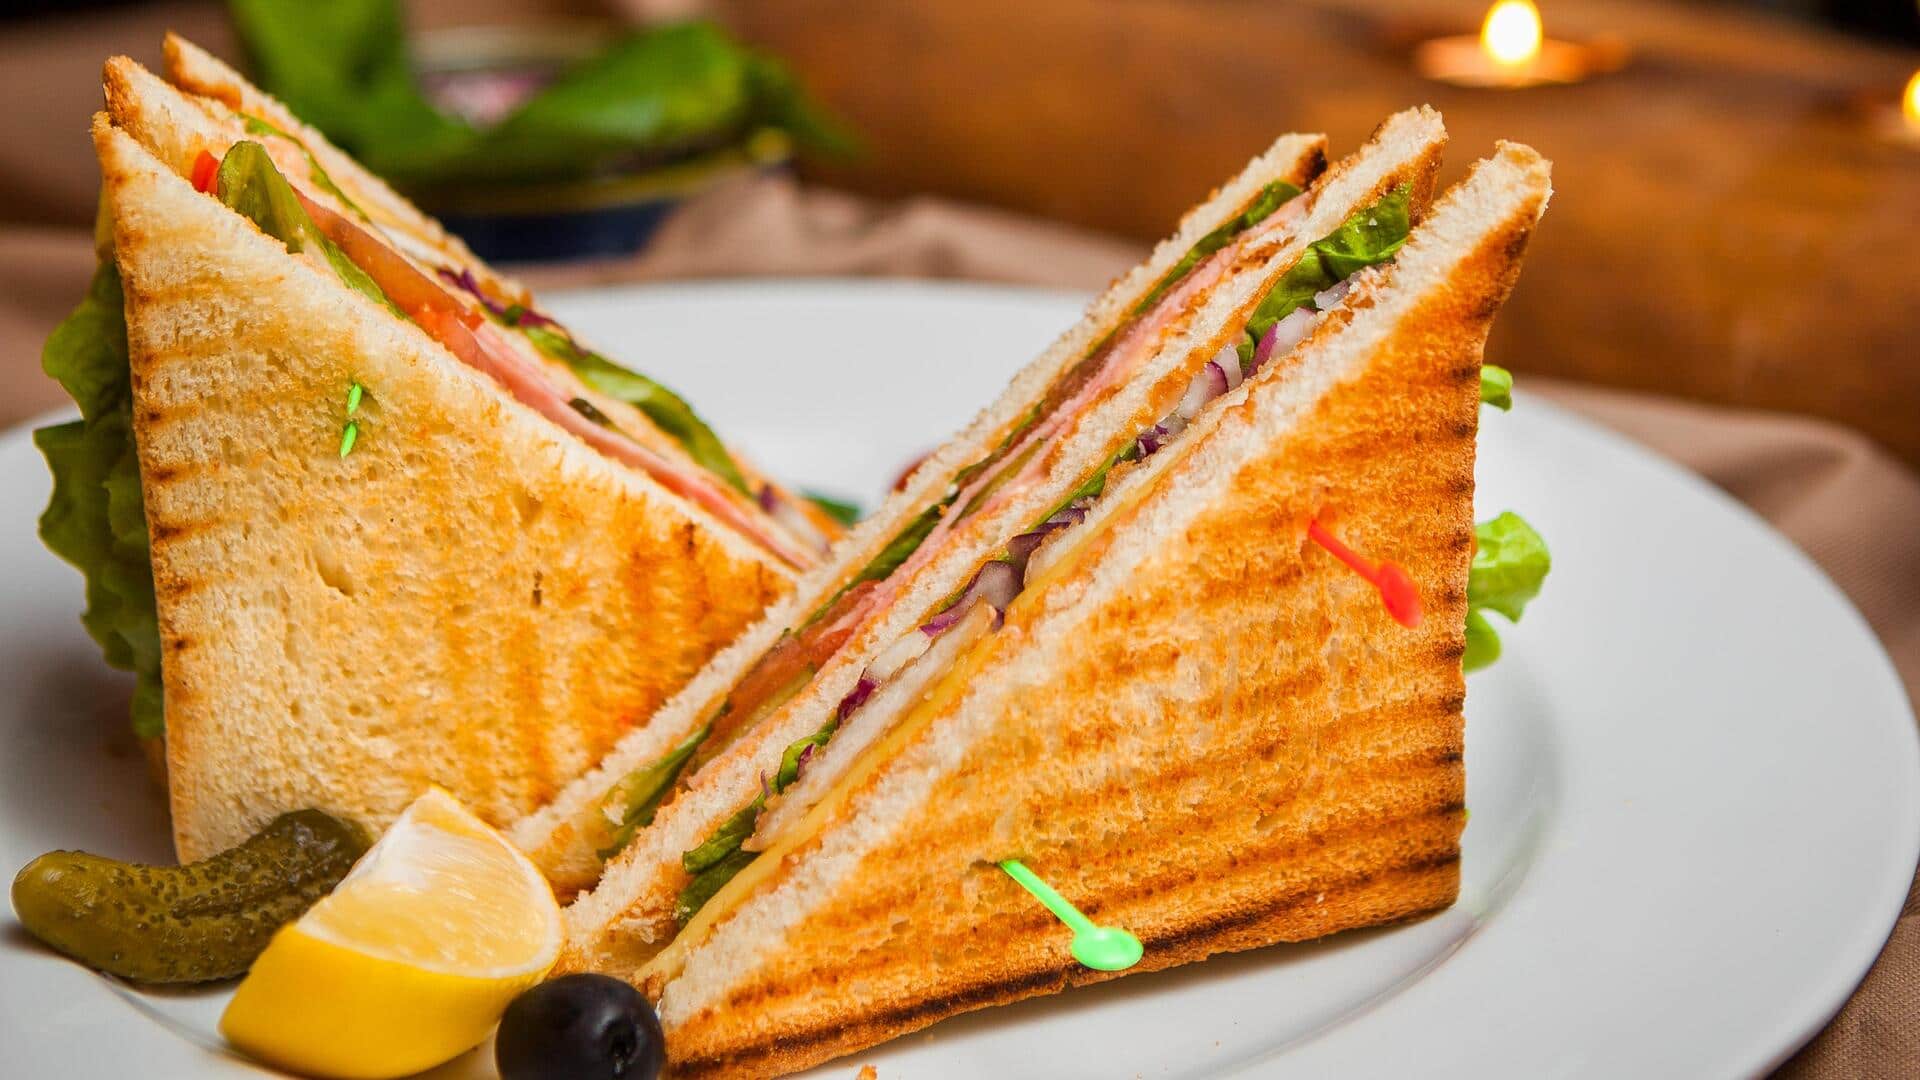 इटली: सैंडविच को आधा काटने पर रेस्टोरेंट ने ब्रिटिश पर्यटक से 180 रुपये अतिरिक्त वसूले